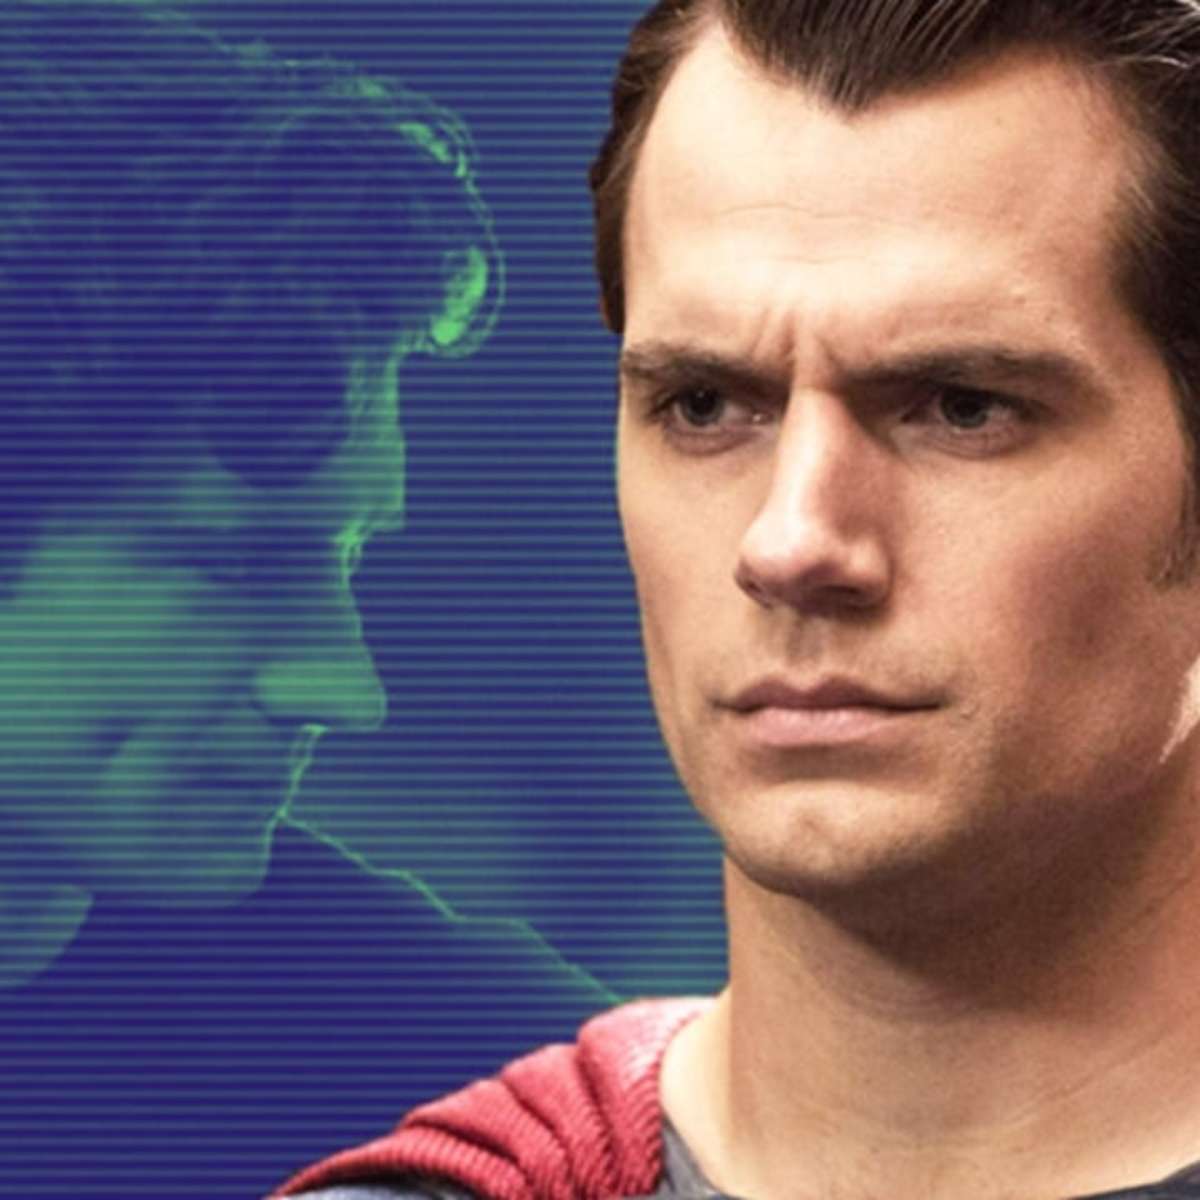 7 atores que podem substituir Henry Cavill como Superman